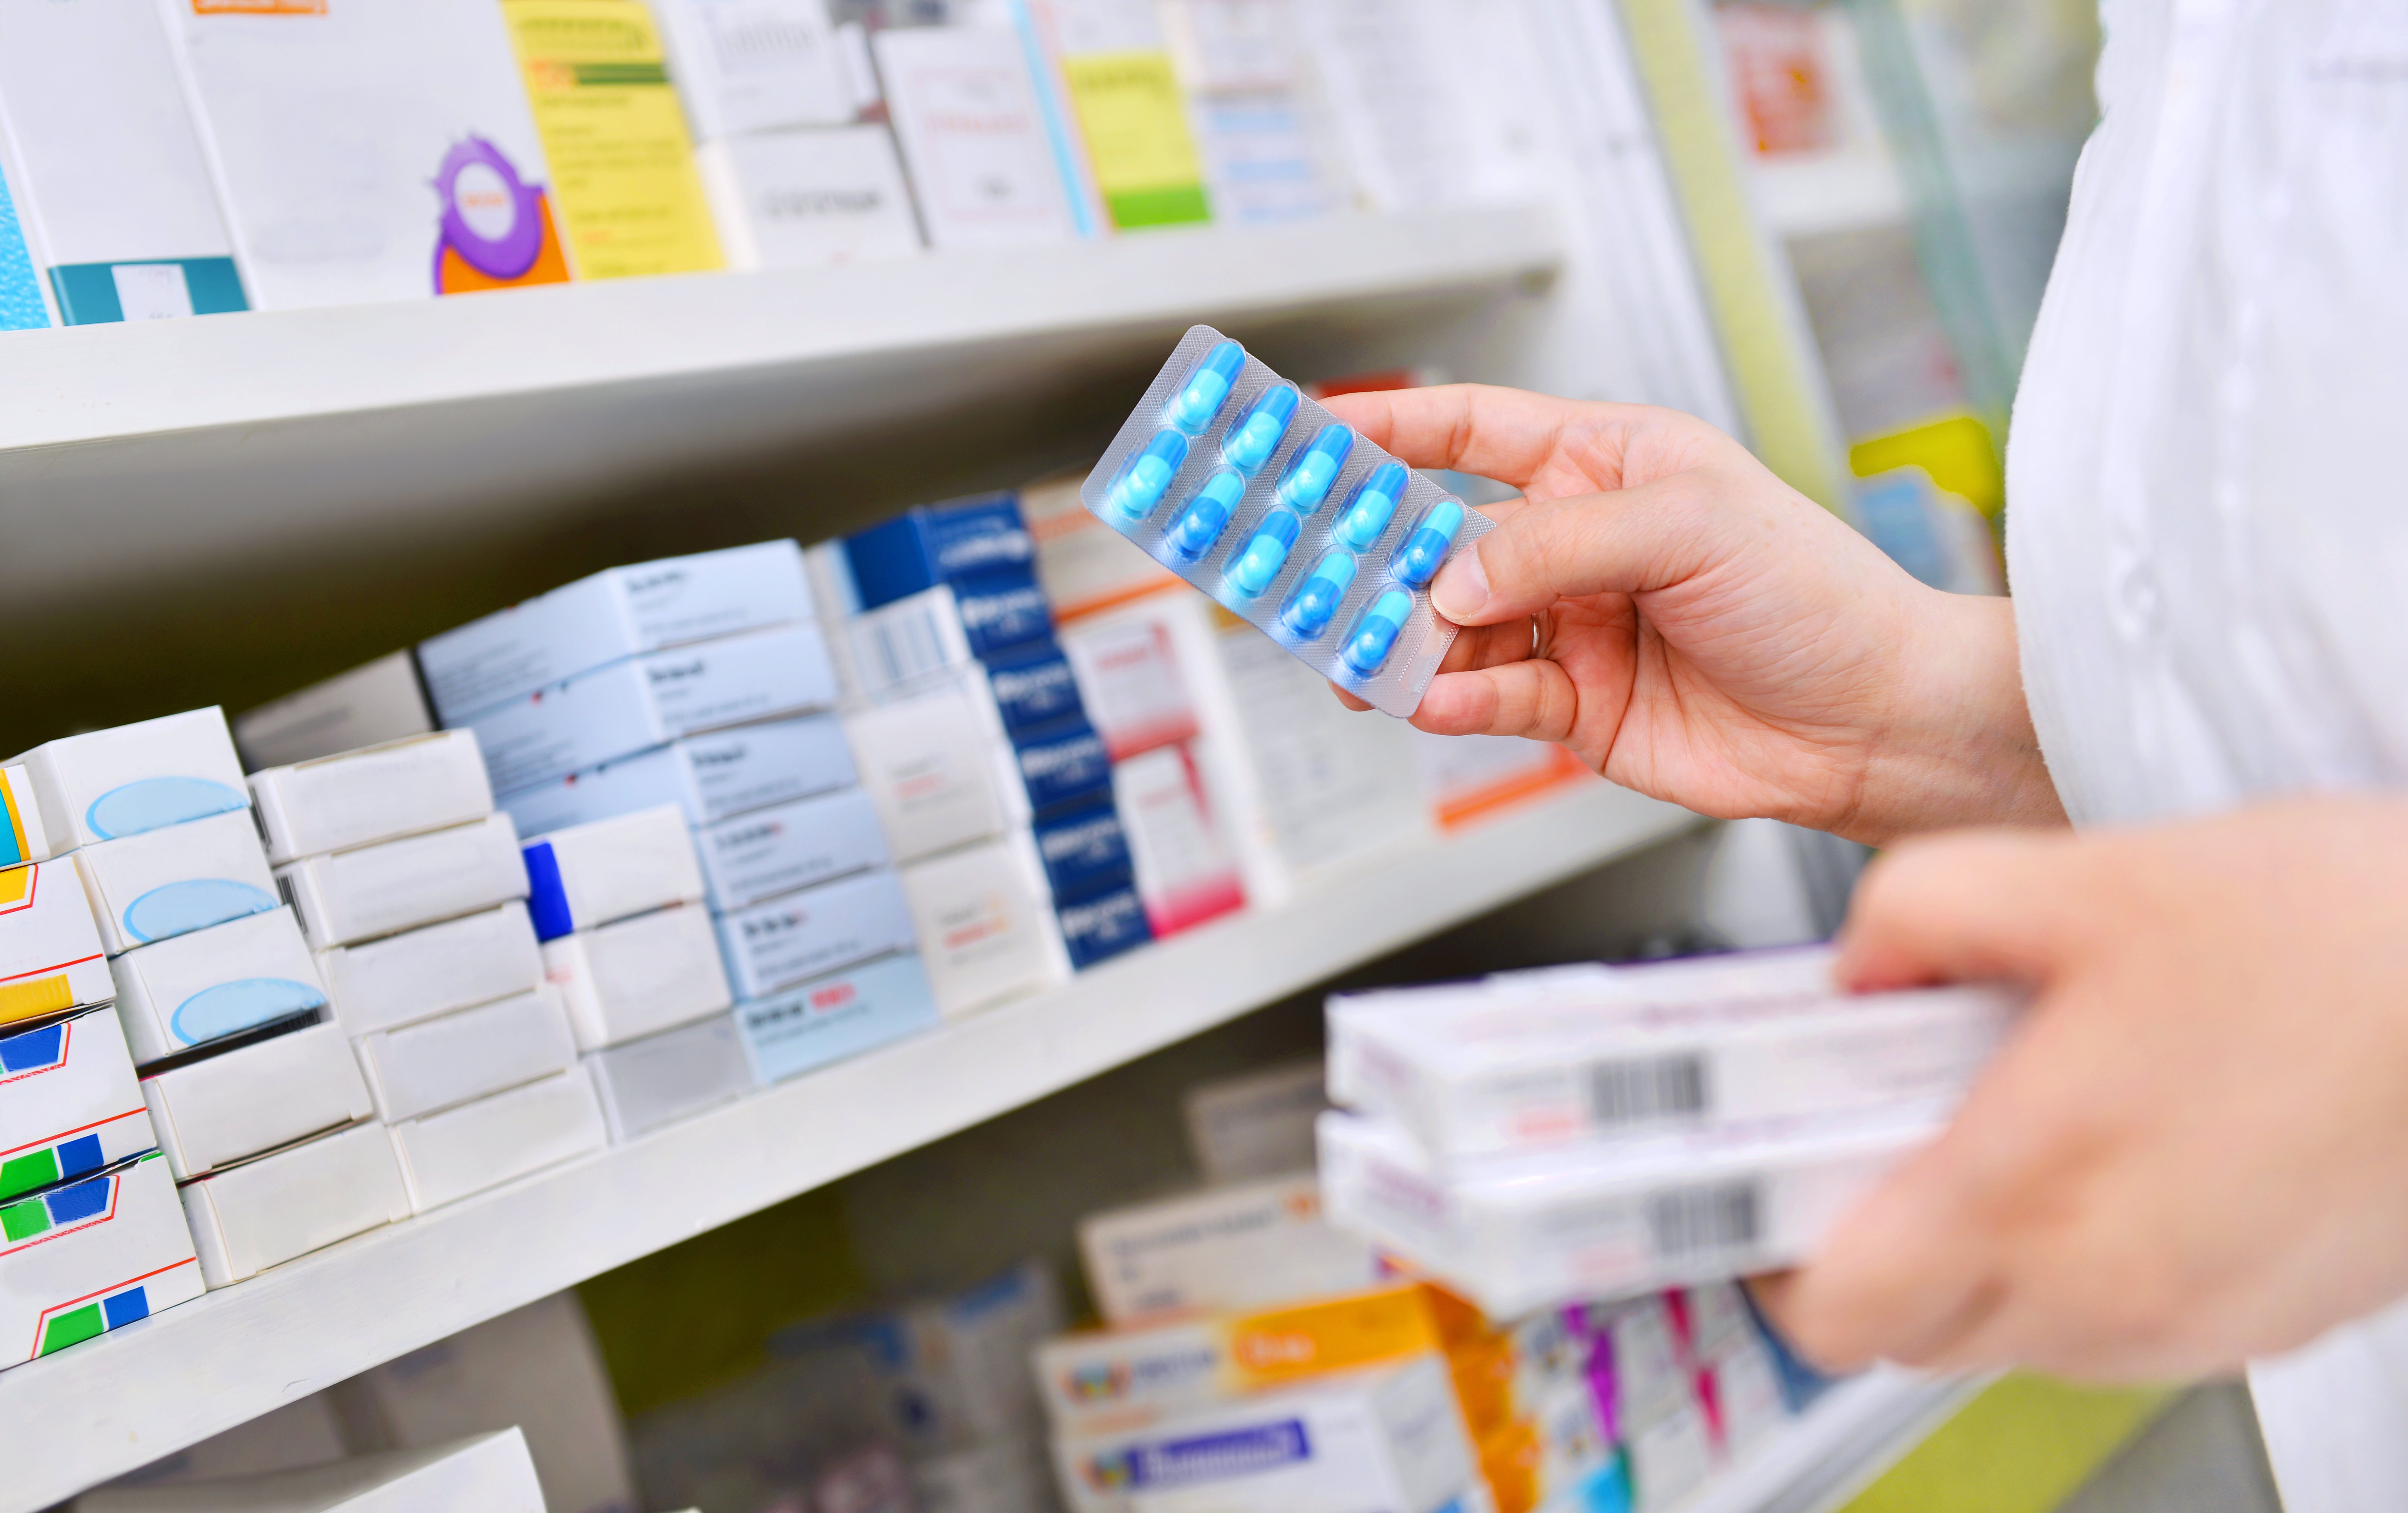 pharmacist-holding-medicine-box-capsule-pack-pharmacy-drugstore